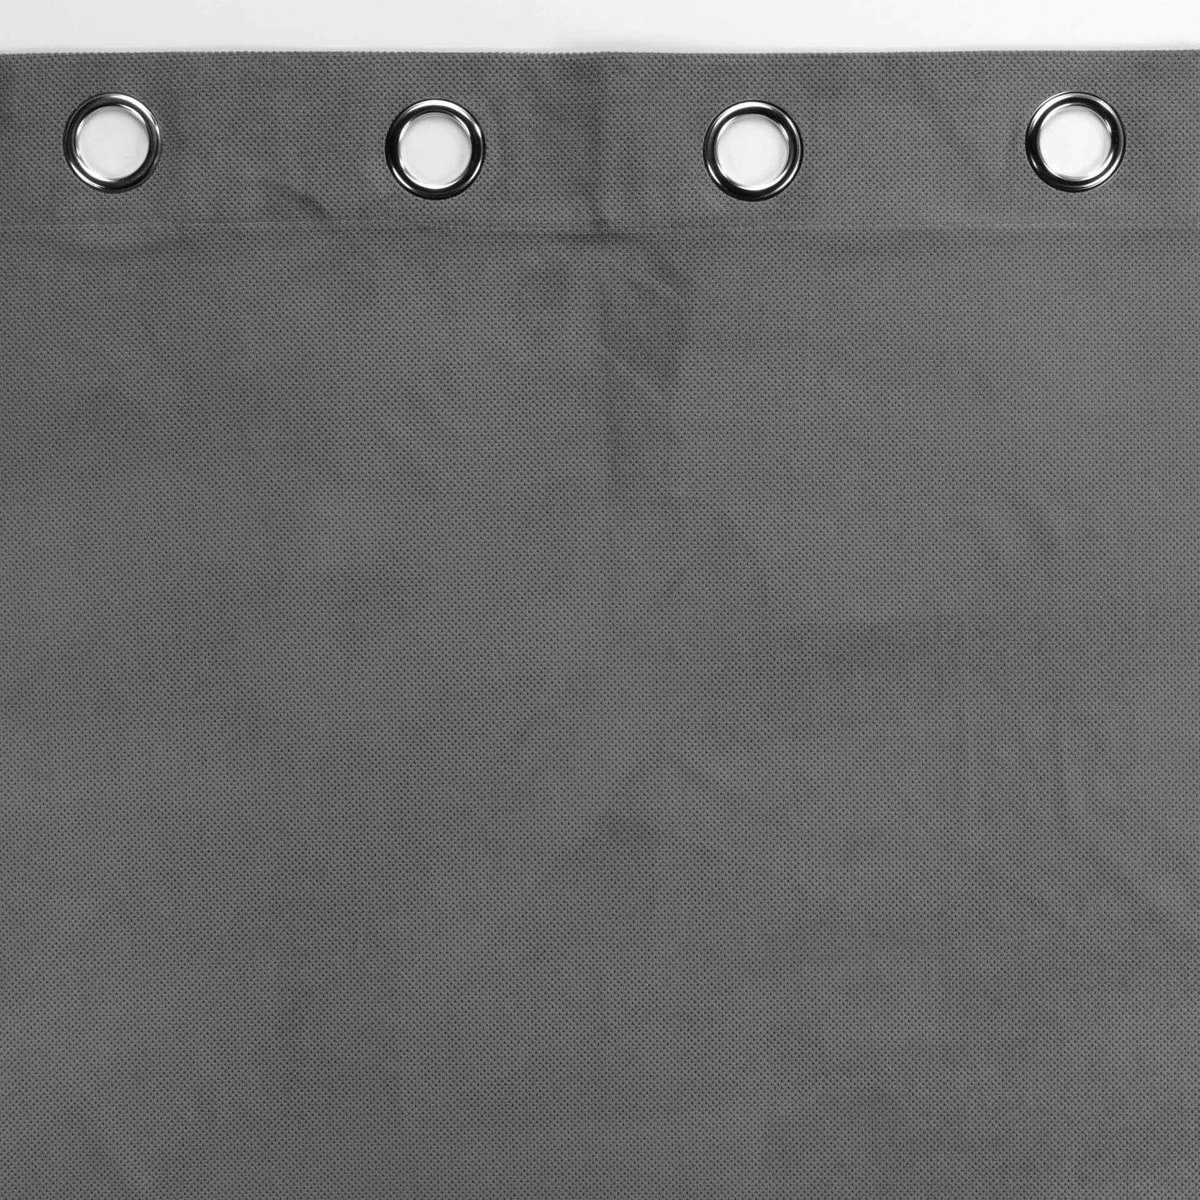 Douceur Vorhang, d'intérieur, Grau modern